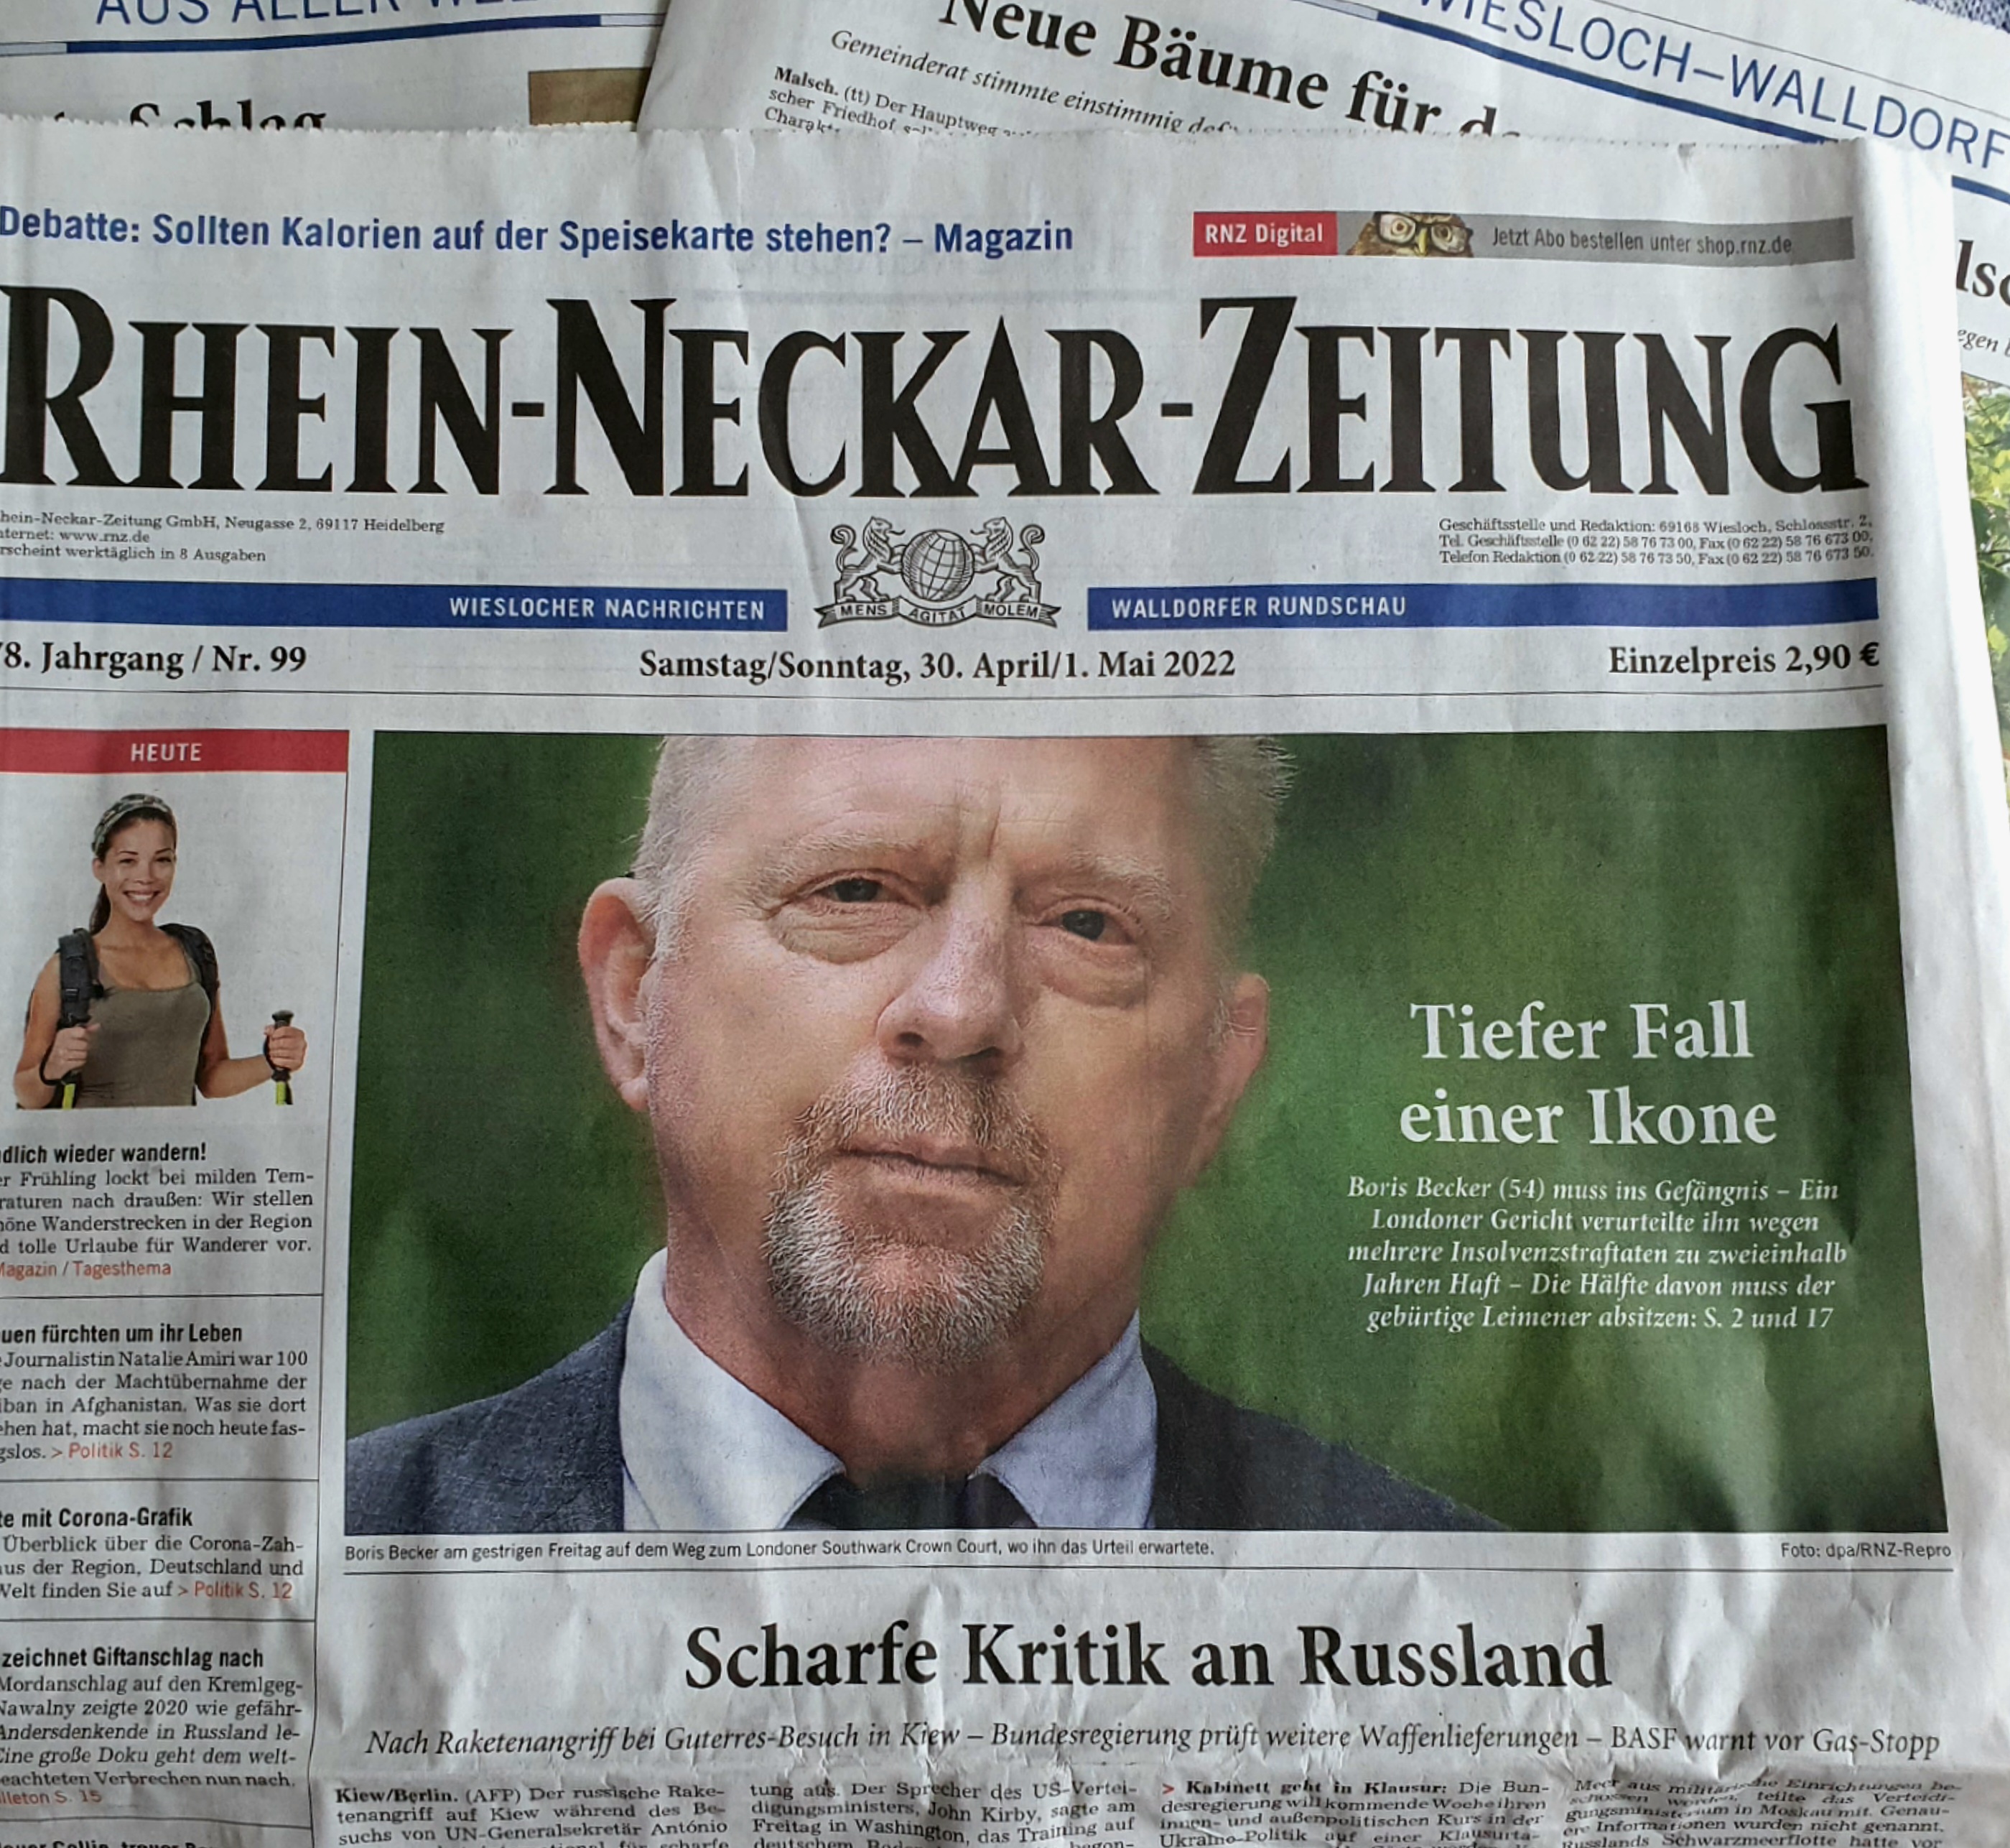 hein-Neckar-Zeitung im Mai 2022 | Foto: Dr. Clemens Kriesel